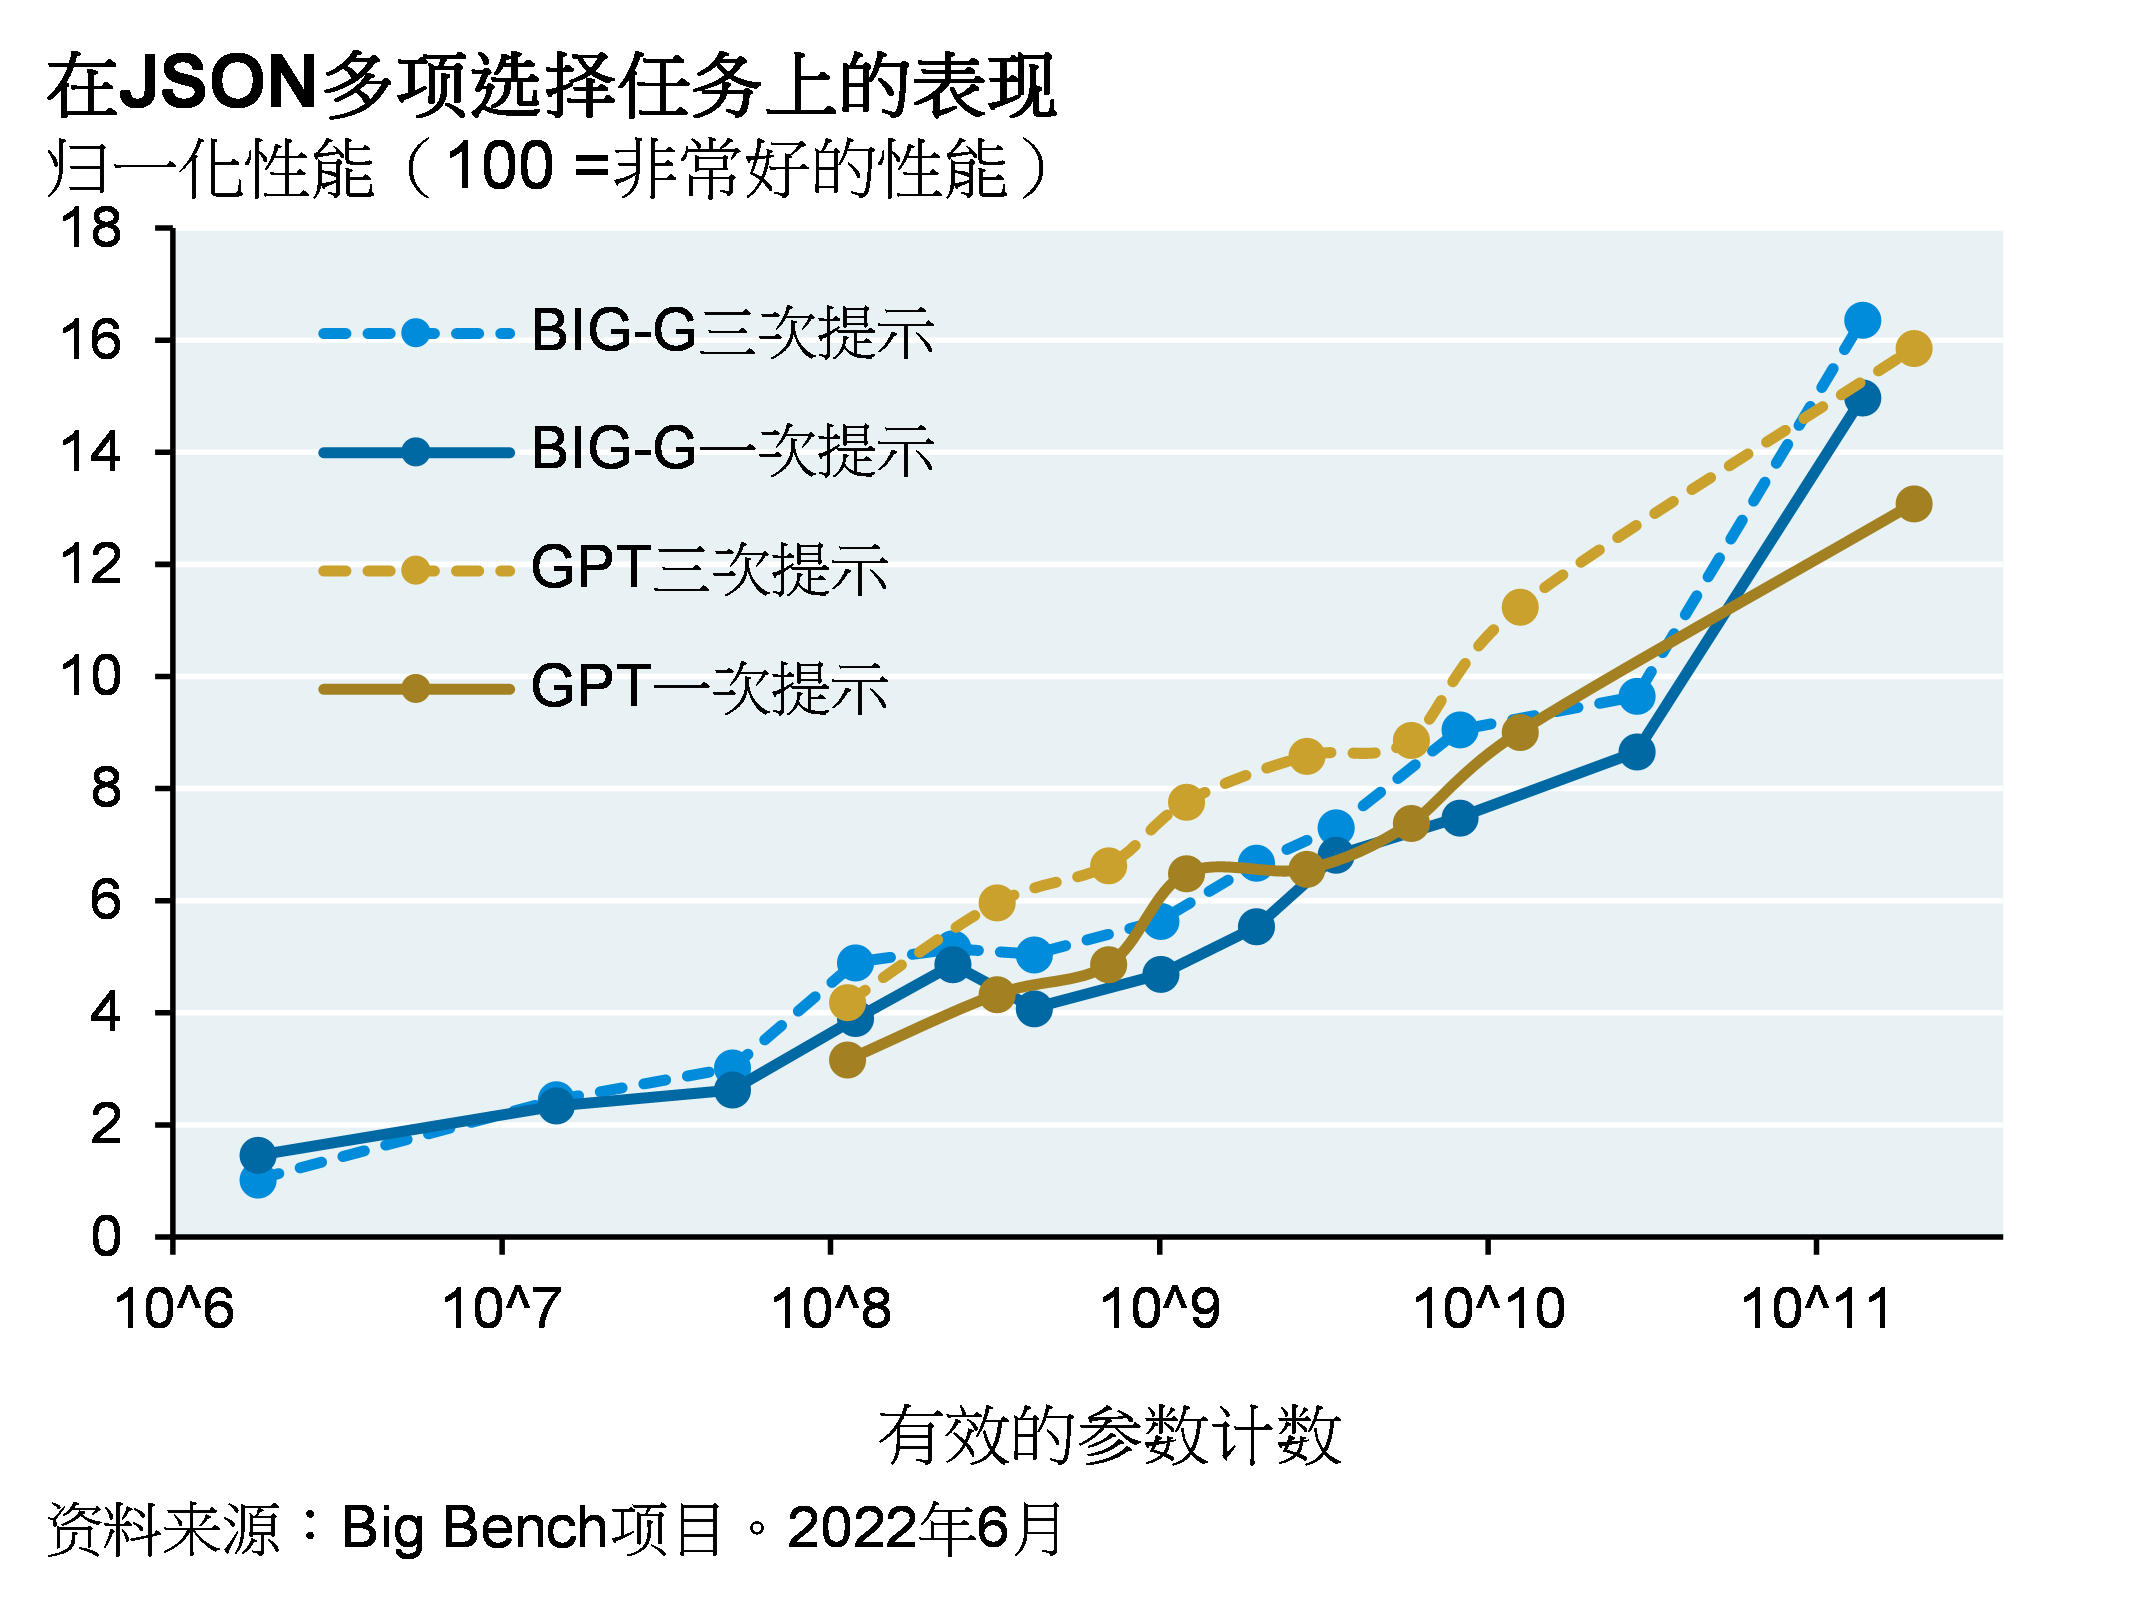 线图显示谷歌的BIG-G和OpenAI的GPT在编程和JSON任务上的一次和三次提示获得的归一化性能（从0到100，100代表非常好的性能）。总体而言，三次提示得分优于一次，而BIG-G得分优于GPT；然而，在参数低于100万亿个时，GPT三次提示表现优于BIG-G三次提示。